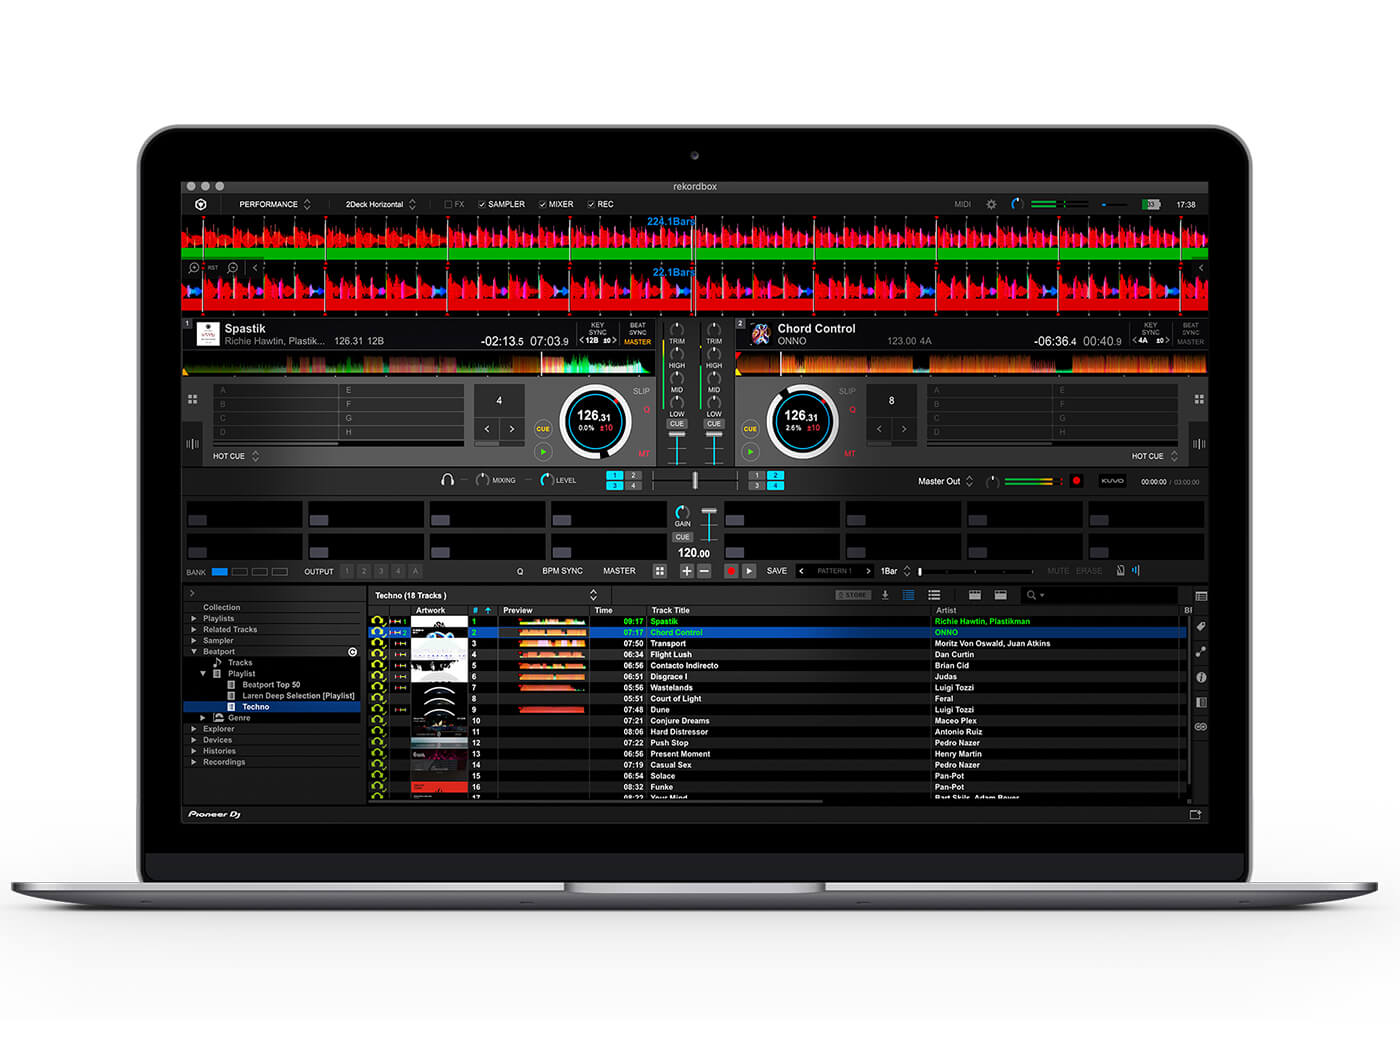 Beatport Link in Pioneer DJ Rekordbox laptop